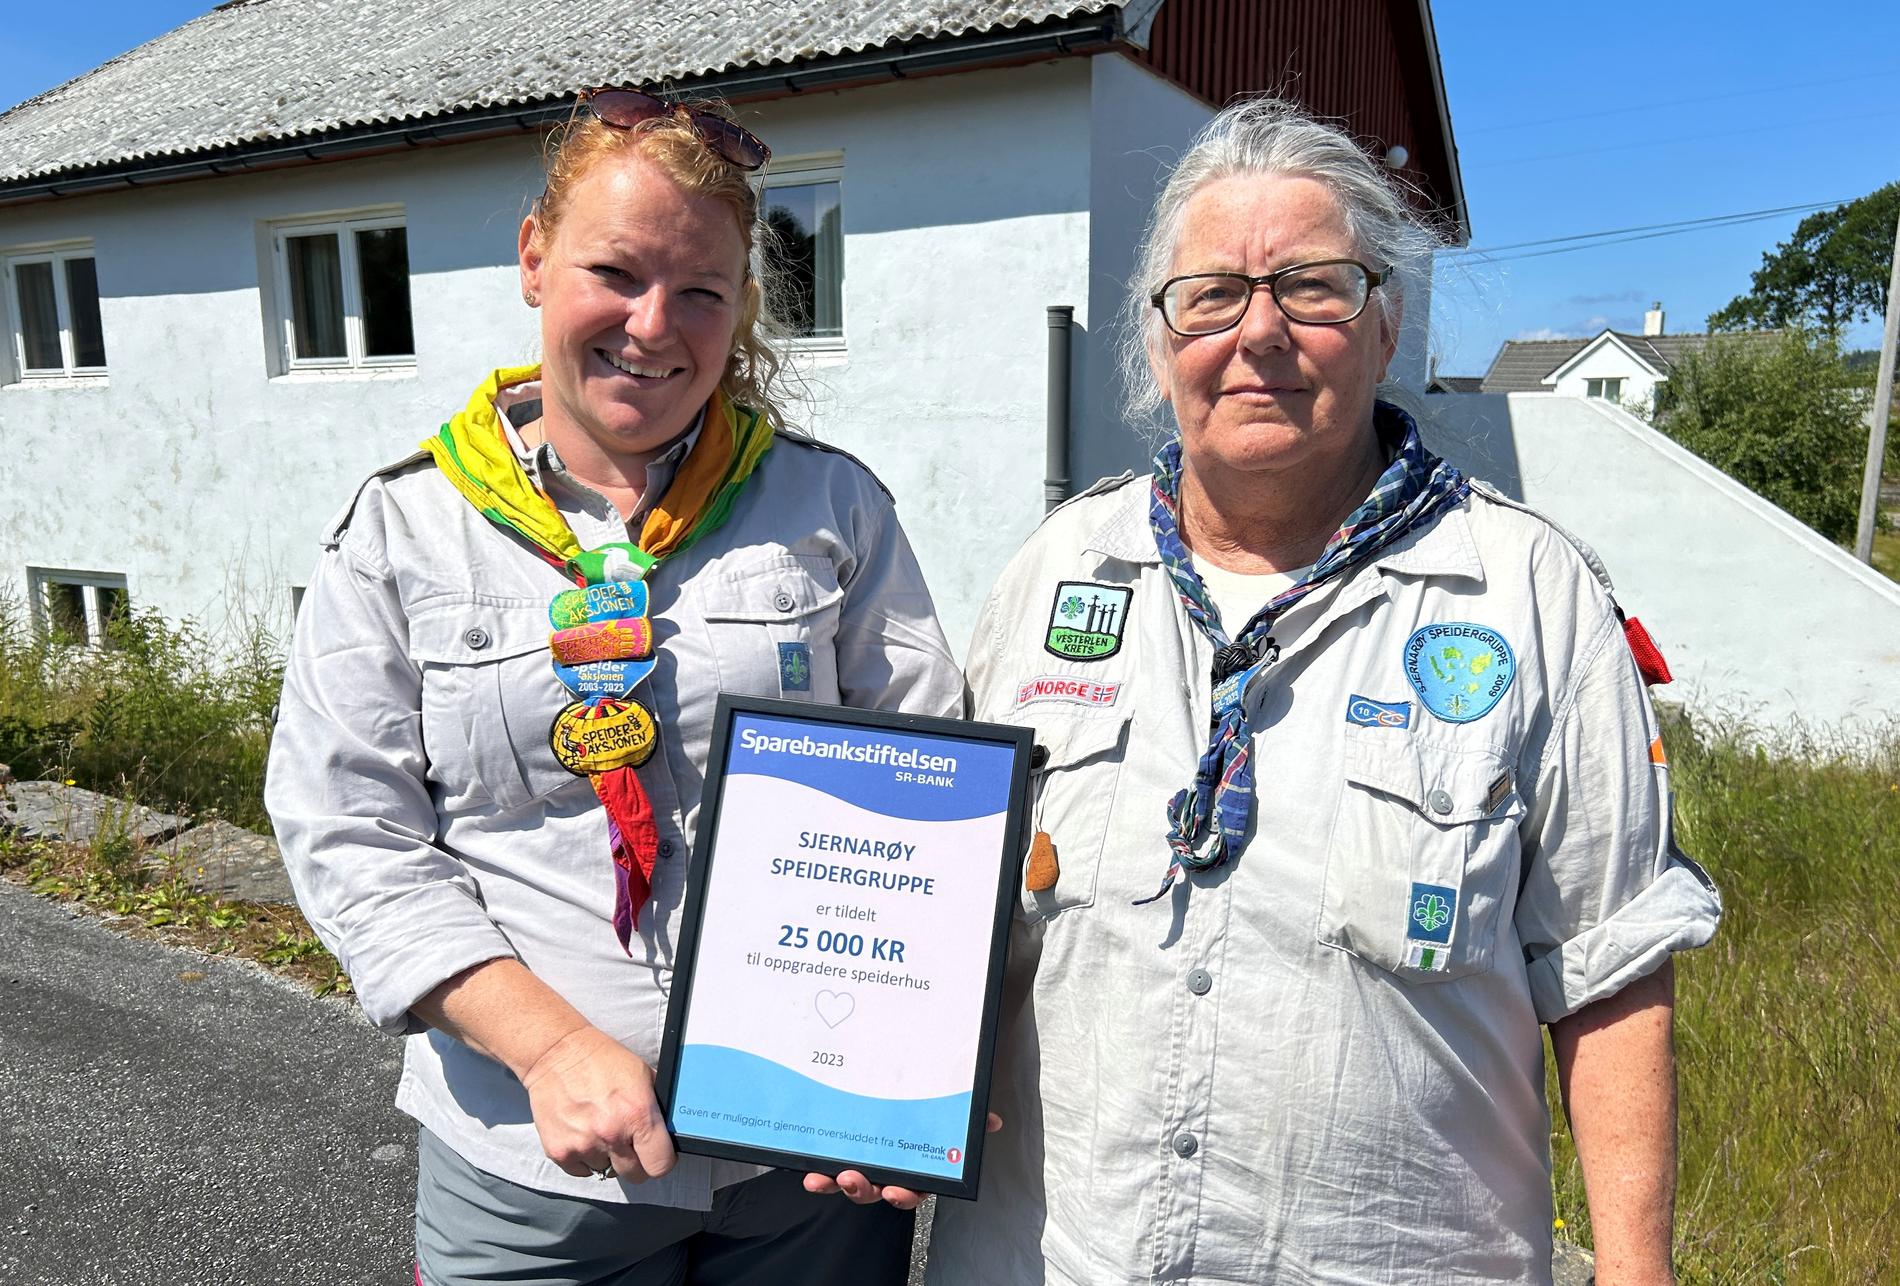 Gruppeleiarar Tove Bergjord Tysdal (t.v.) og Rita Vik i Sjernarøy Speidergruppe føre klubbhuset sitt på Nord-Talgje og med pengegåva frå Sparebankstiftelsen SR-Bank.